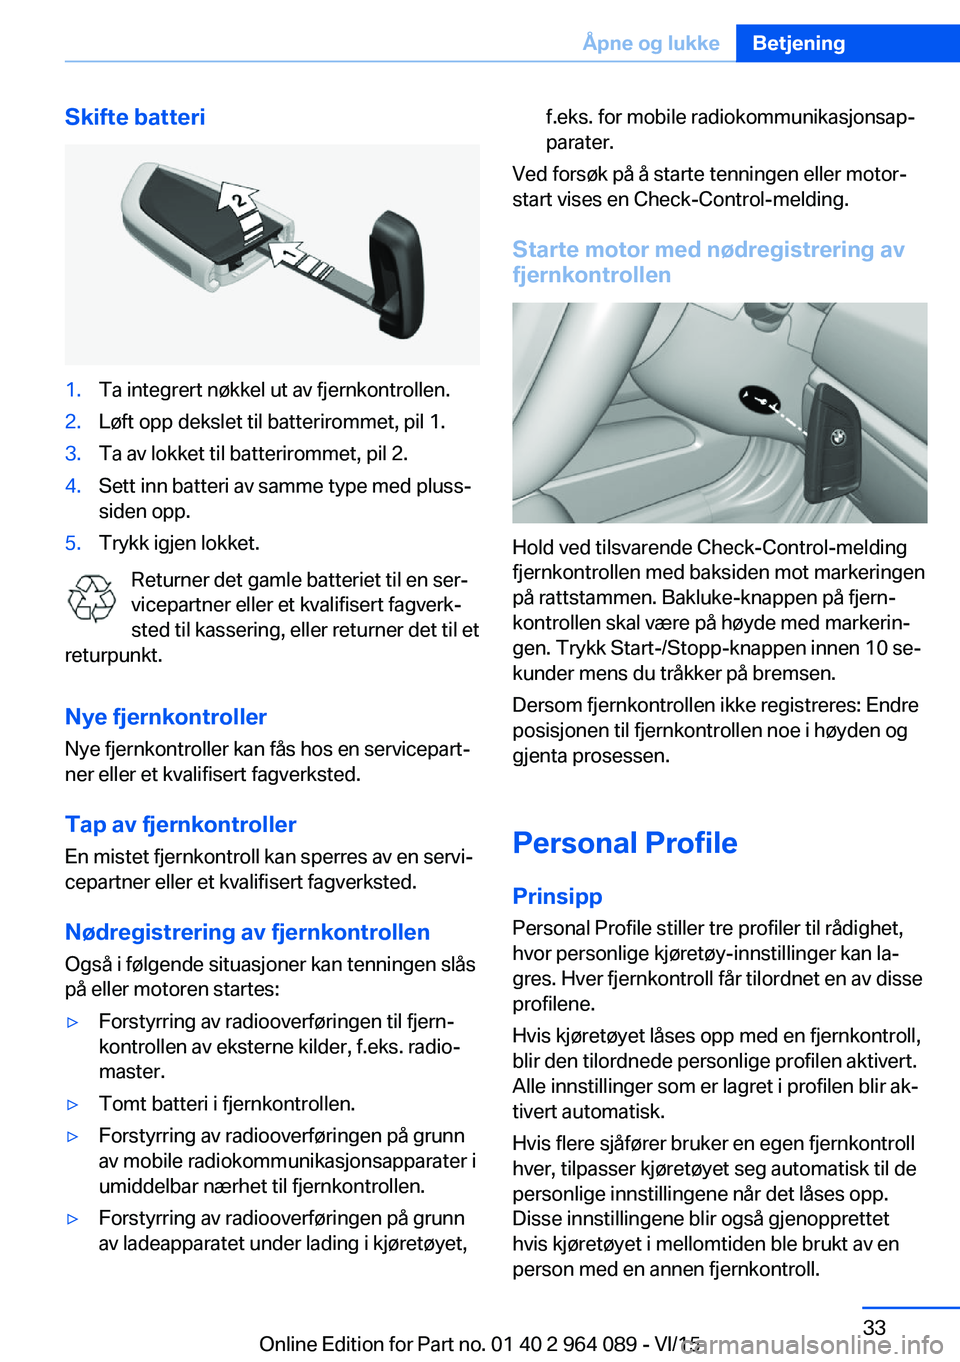 BMW X6 M 2016  InstruksjonsbØker (in Norwegian) Skifte batteri1.Ta integrert nøkkel ut av fjernkontrollen.2.Løft opp dekslet til batterirommet, pil 1.3.Ta av lokket til batterirommet, pil 2.4.Sett inn batteri av samme type med pluss-
siden opp.5.